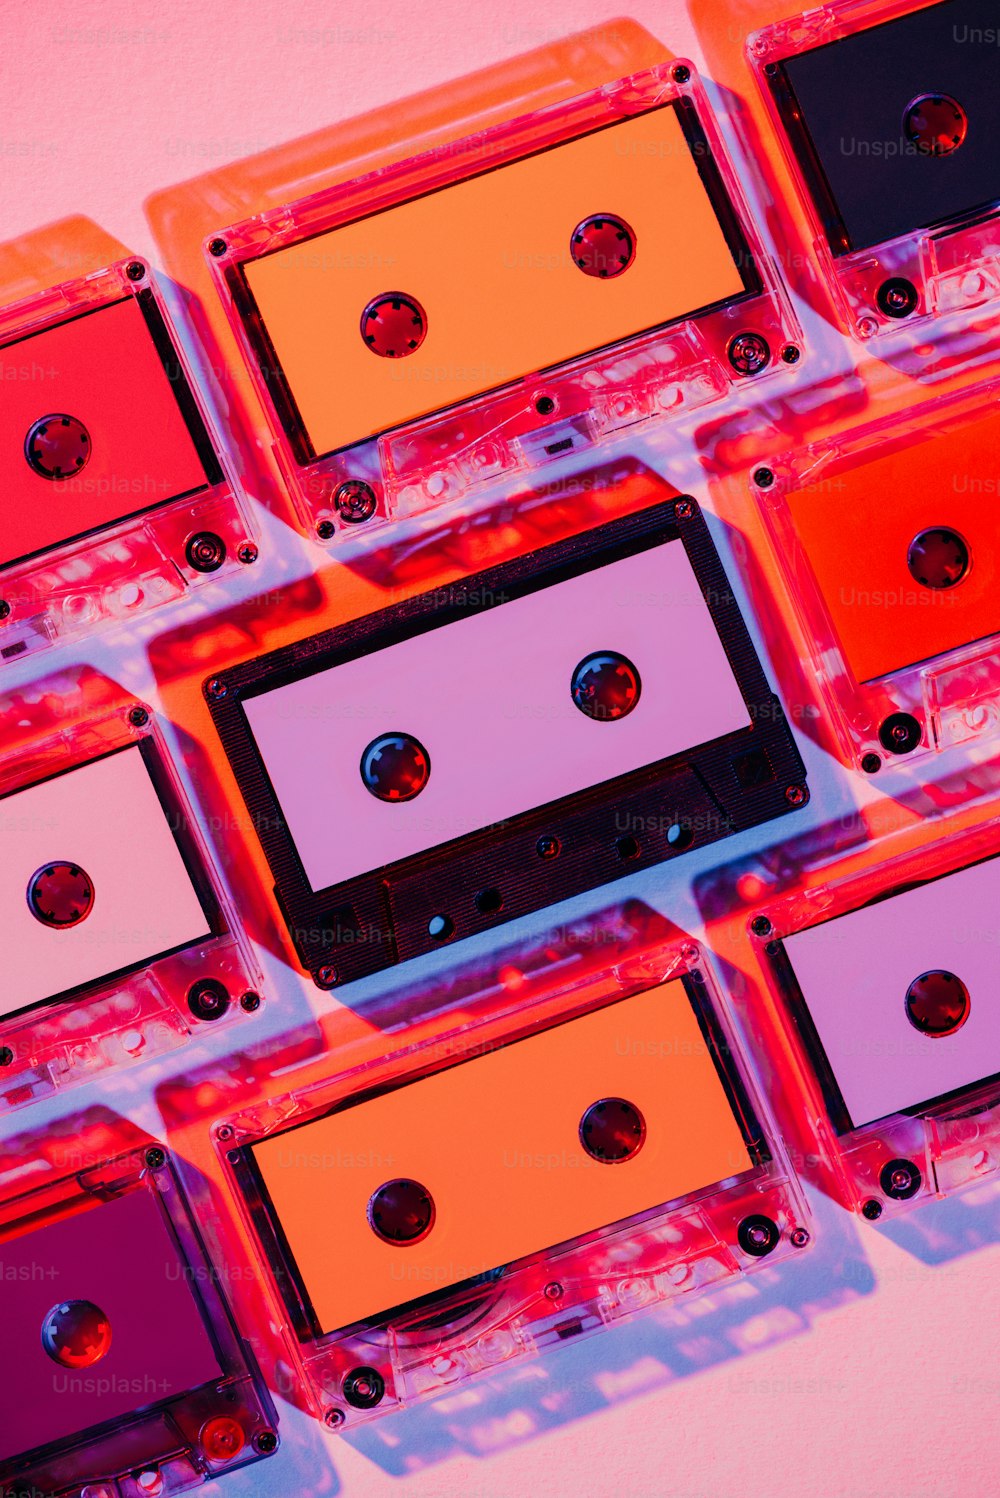 imagem tonificada de de áudio retro coloridas no fundo cor-de-rosa